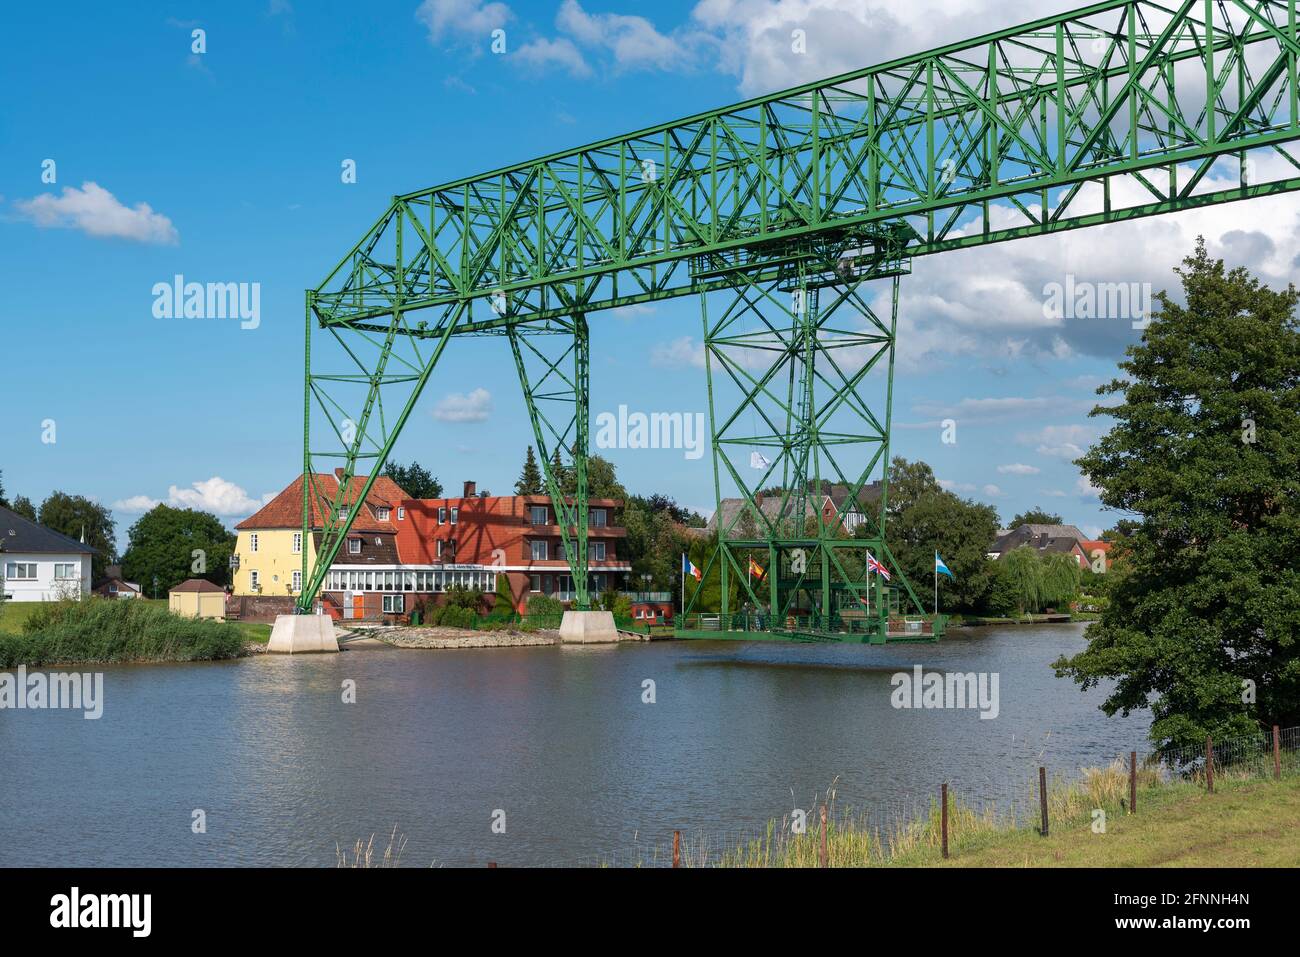 Transporter bridge Osten-Hemmor over the river Oste, Osten, Lower Saxony, Germany, Europe Stock Photo